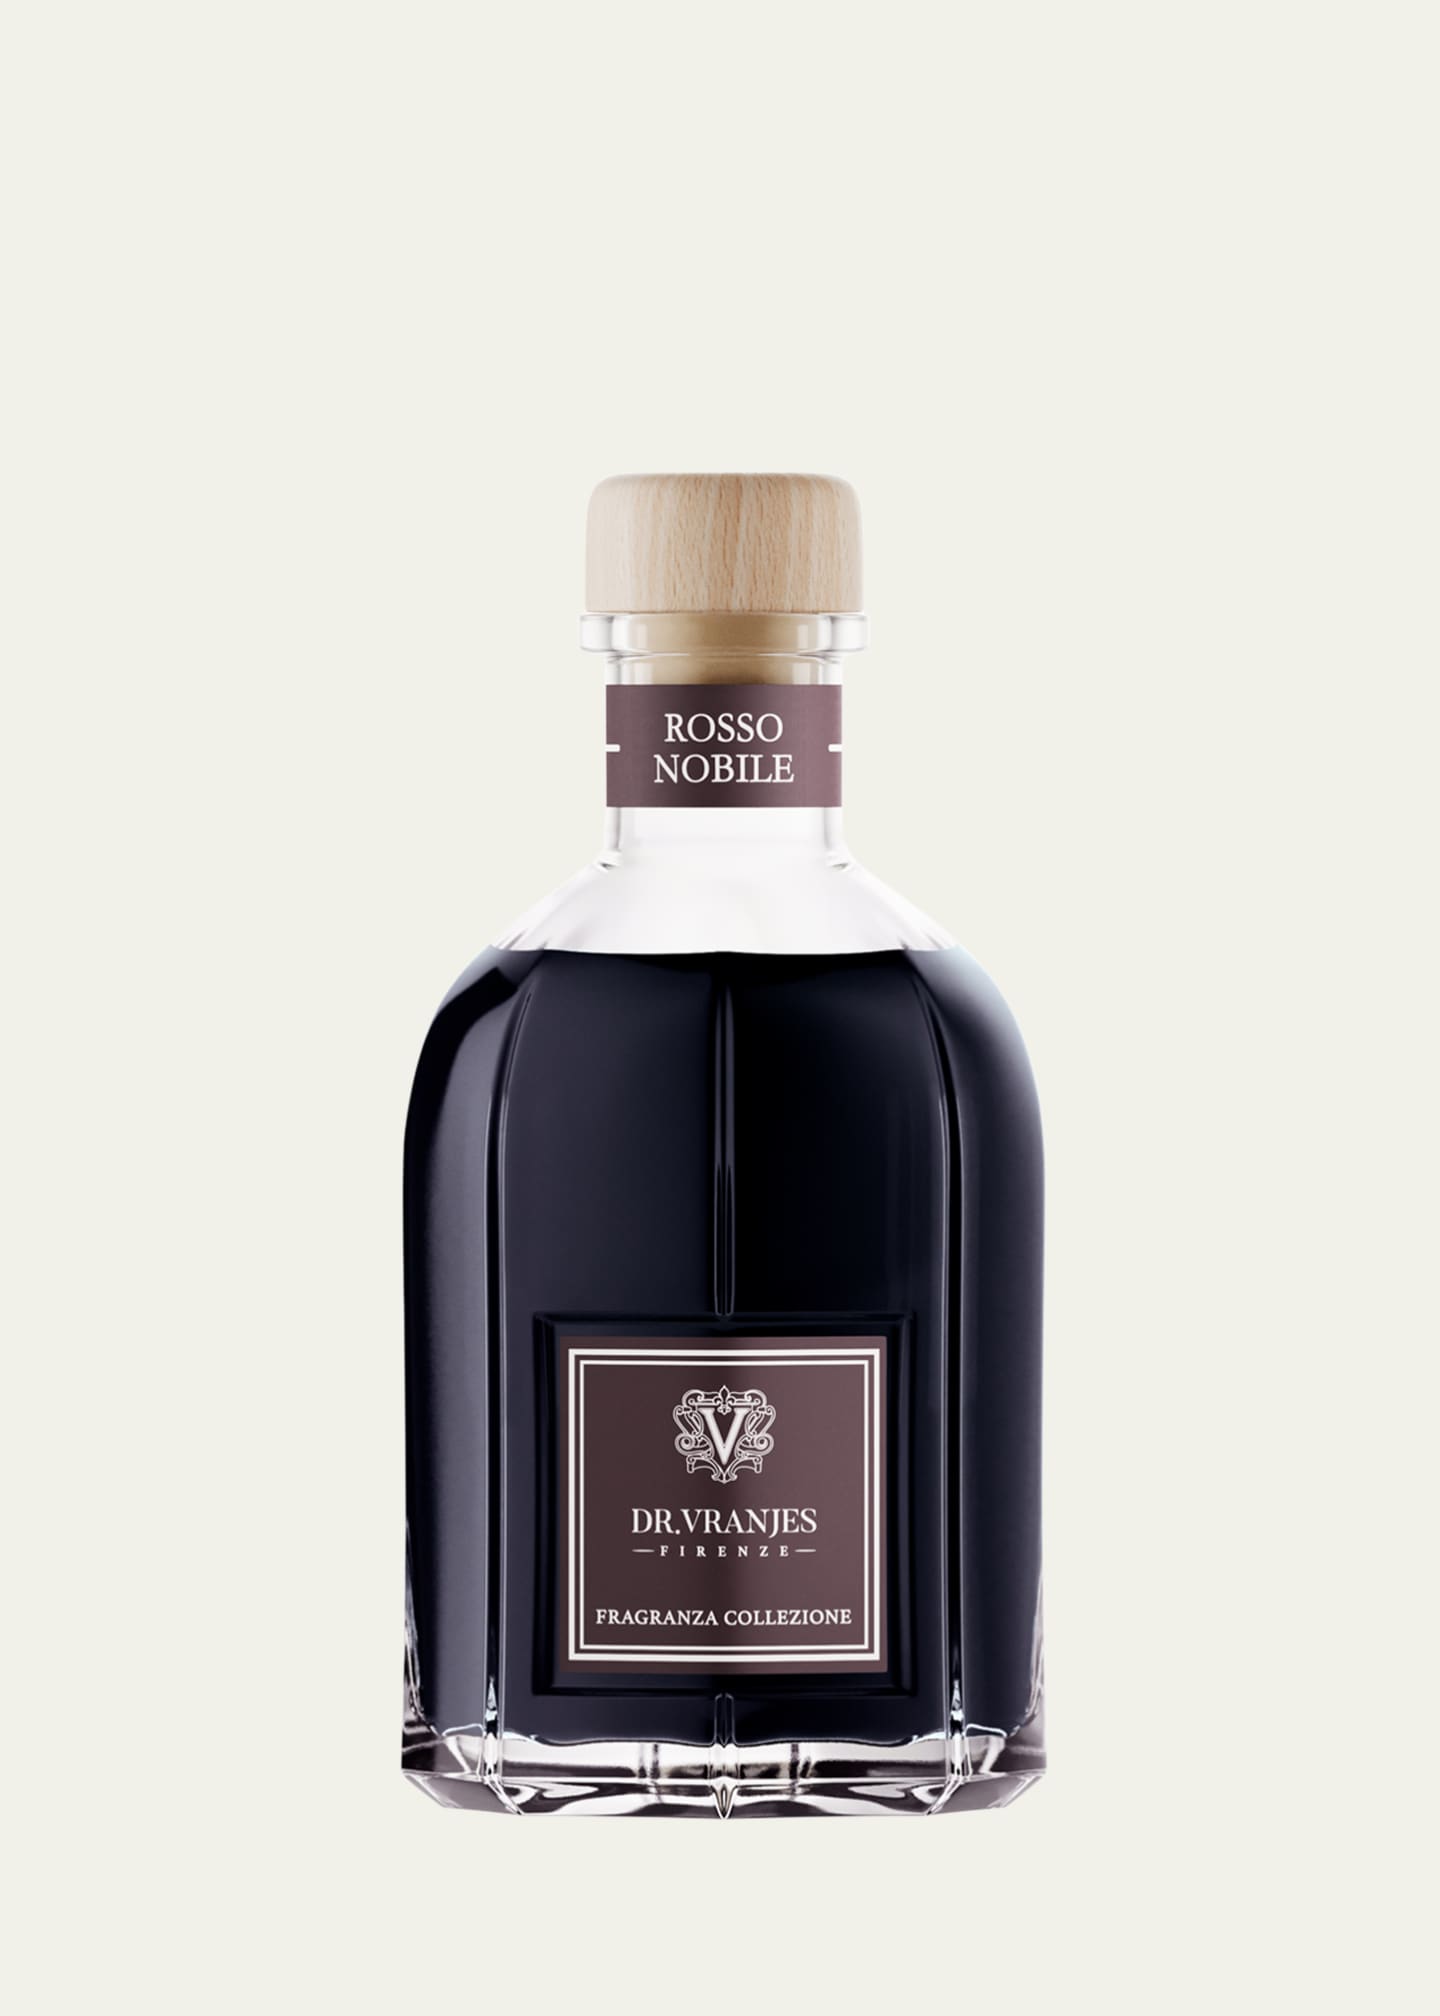 Dr. Vranjes Firenze Rosso Nobile Glass Bottle Collection Fragrance, 8.5 oz. Image 2 of 3